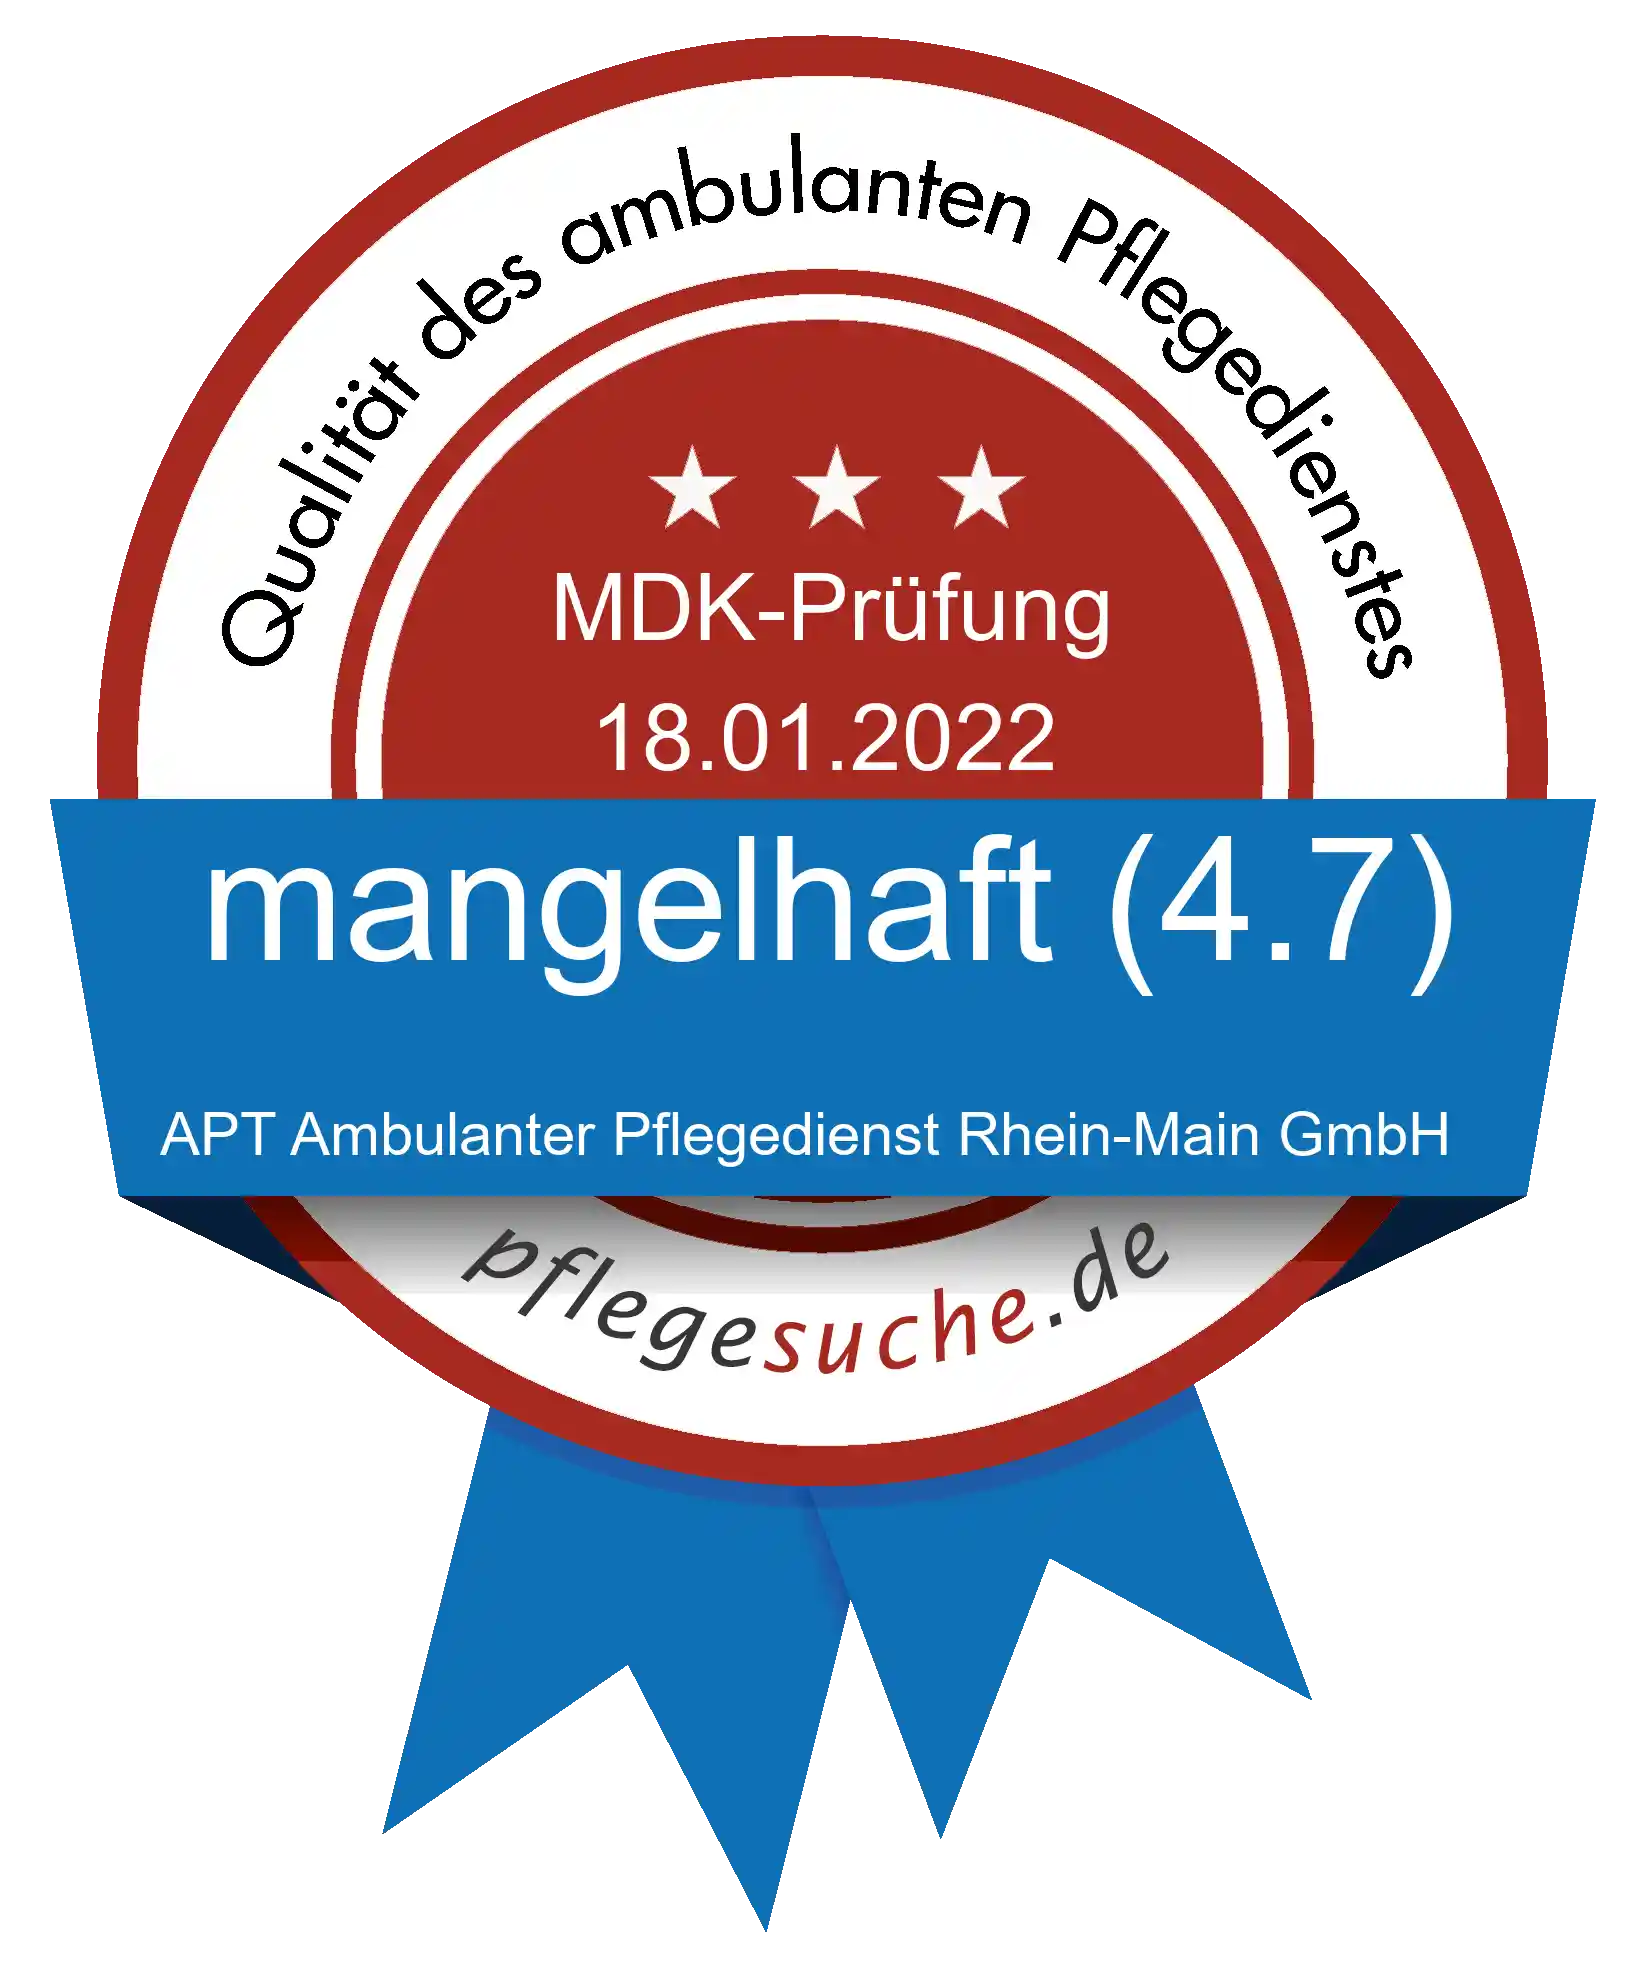 Siegel Benotung: APT Ambulanter Pflegedienst Rhein-Main GmbH